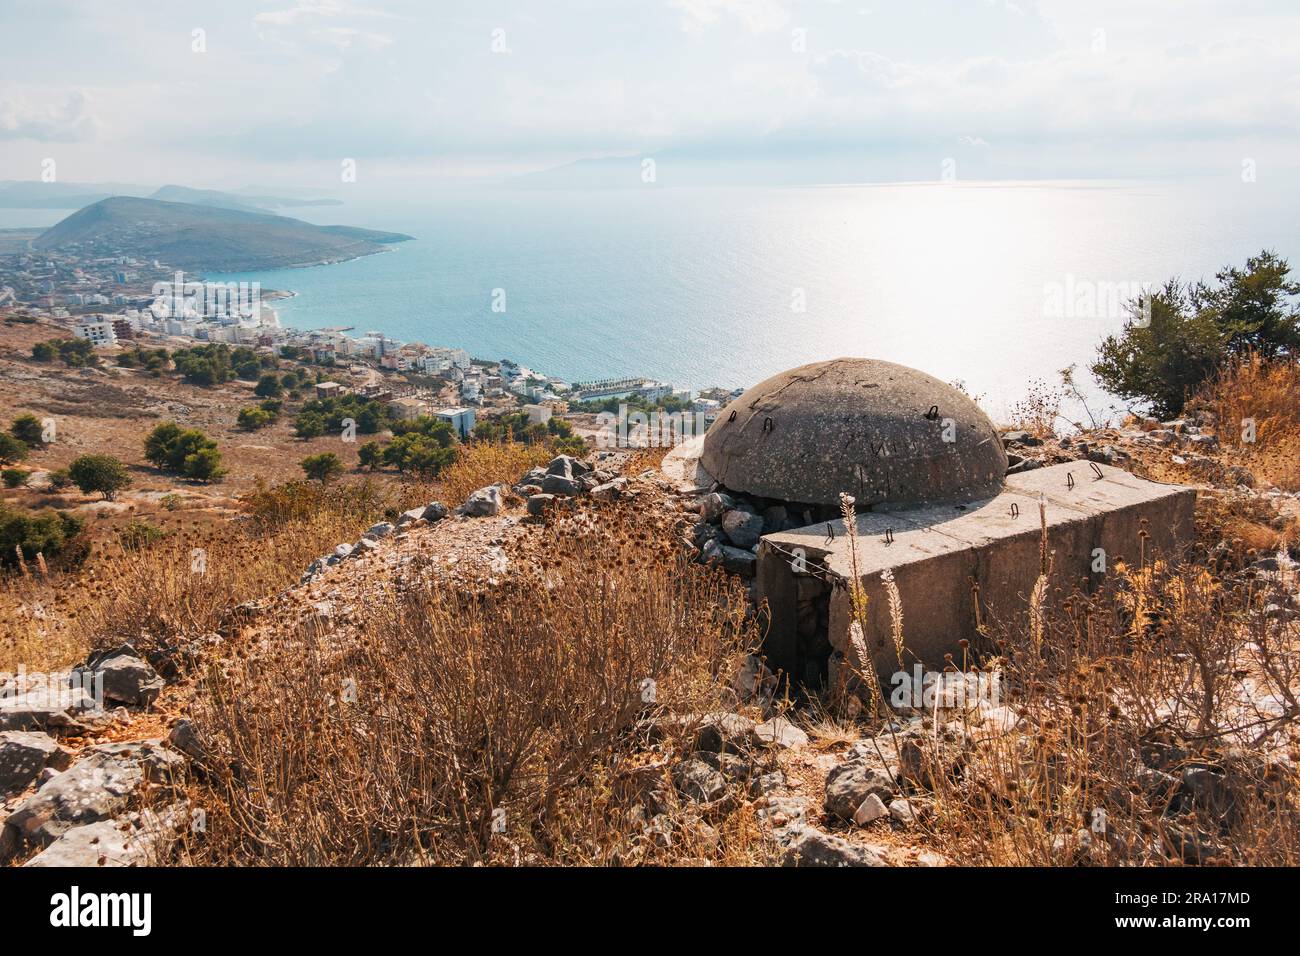 Un bunker di cemento dell'epoca comunista sulla cima di una collina a Sarandë, nell'Albania meridionale Foto Stock